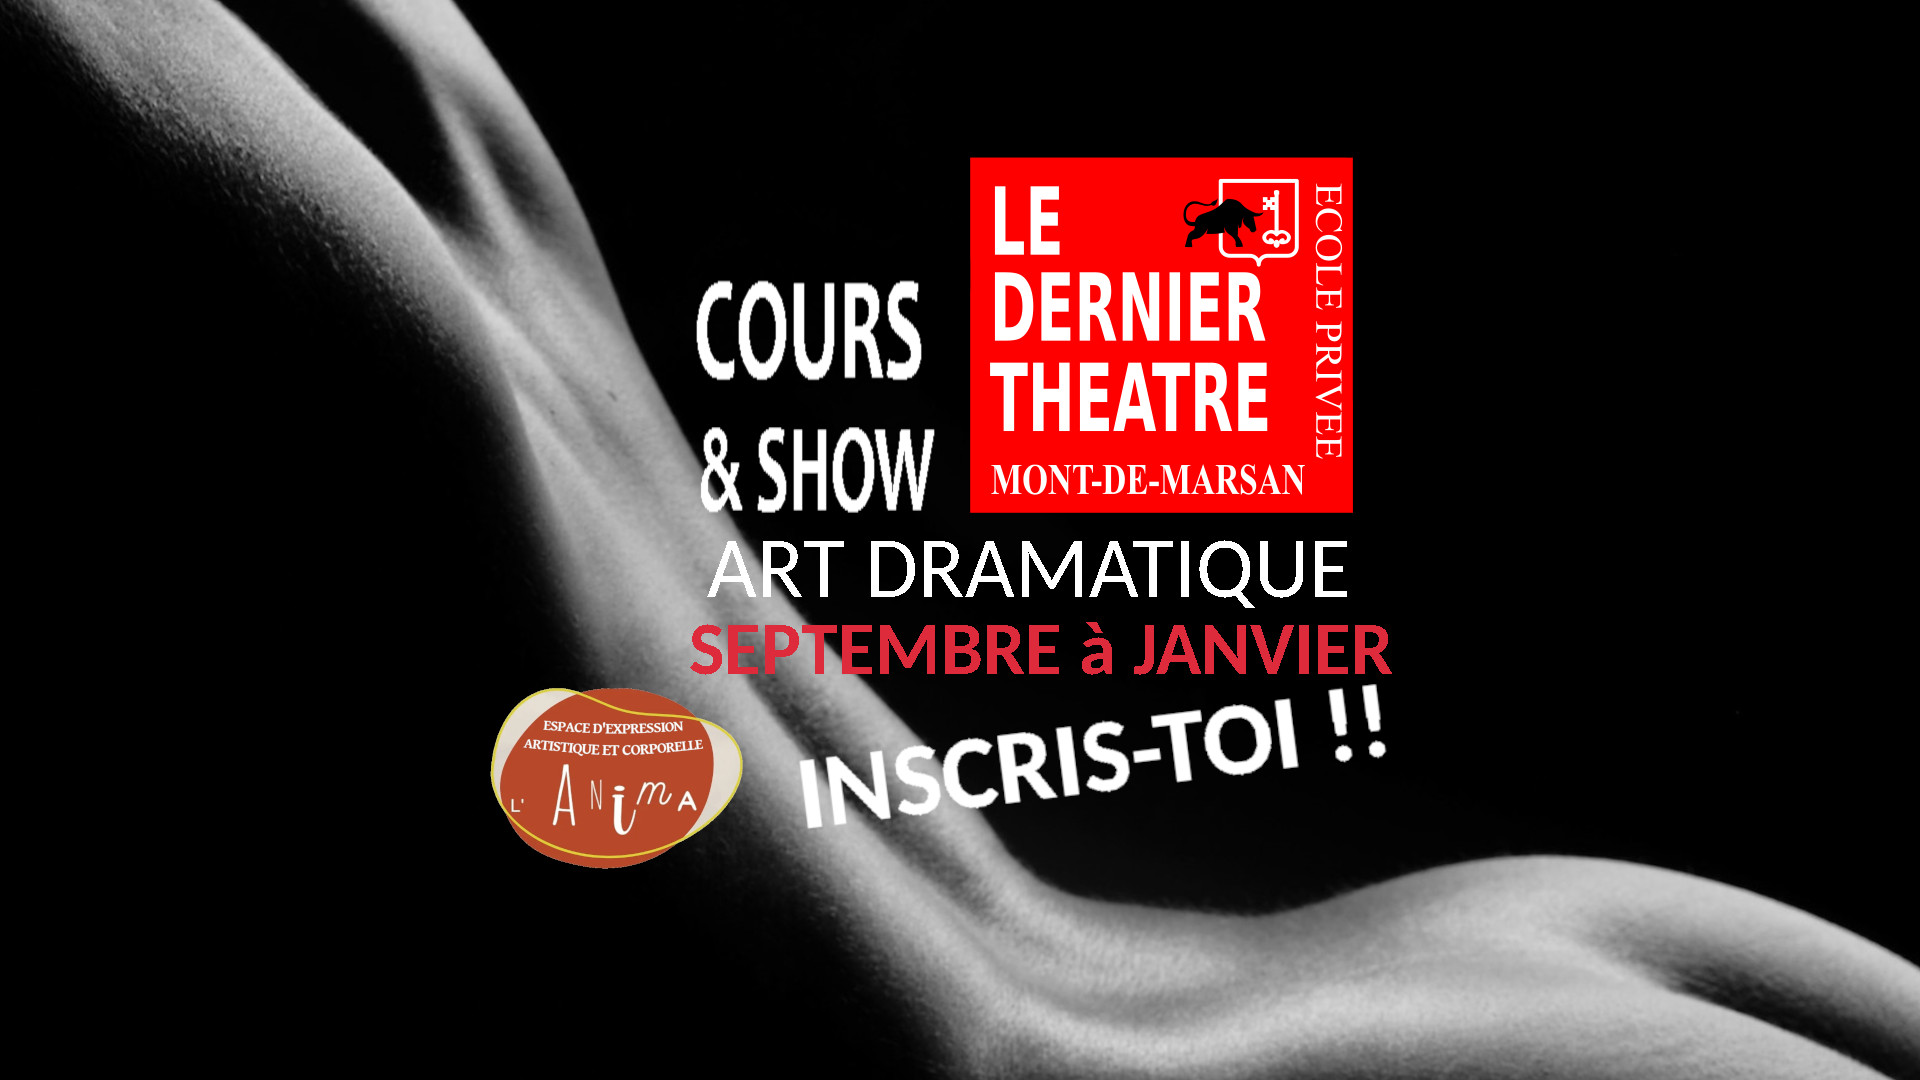 Le dernier théâtre - École privée art Dramatique - Cours & Show